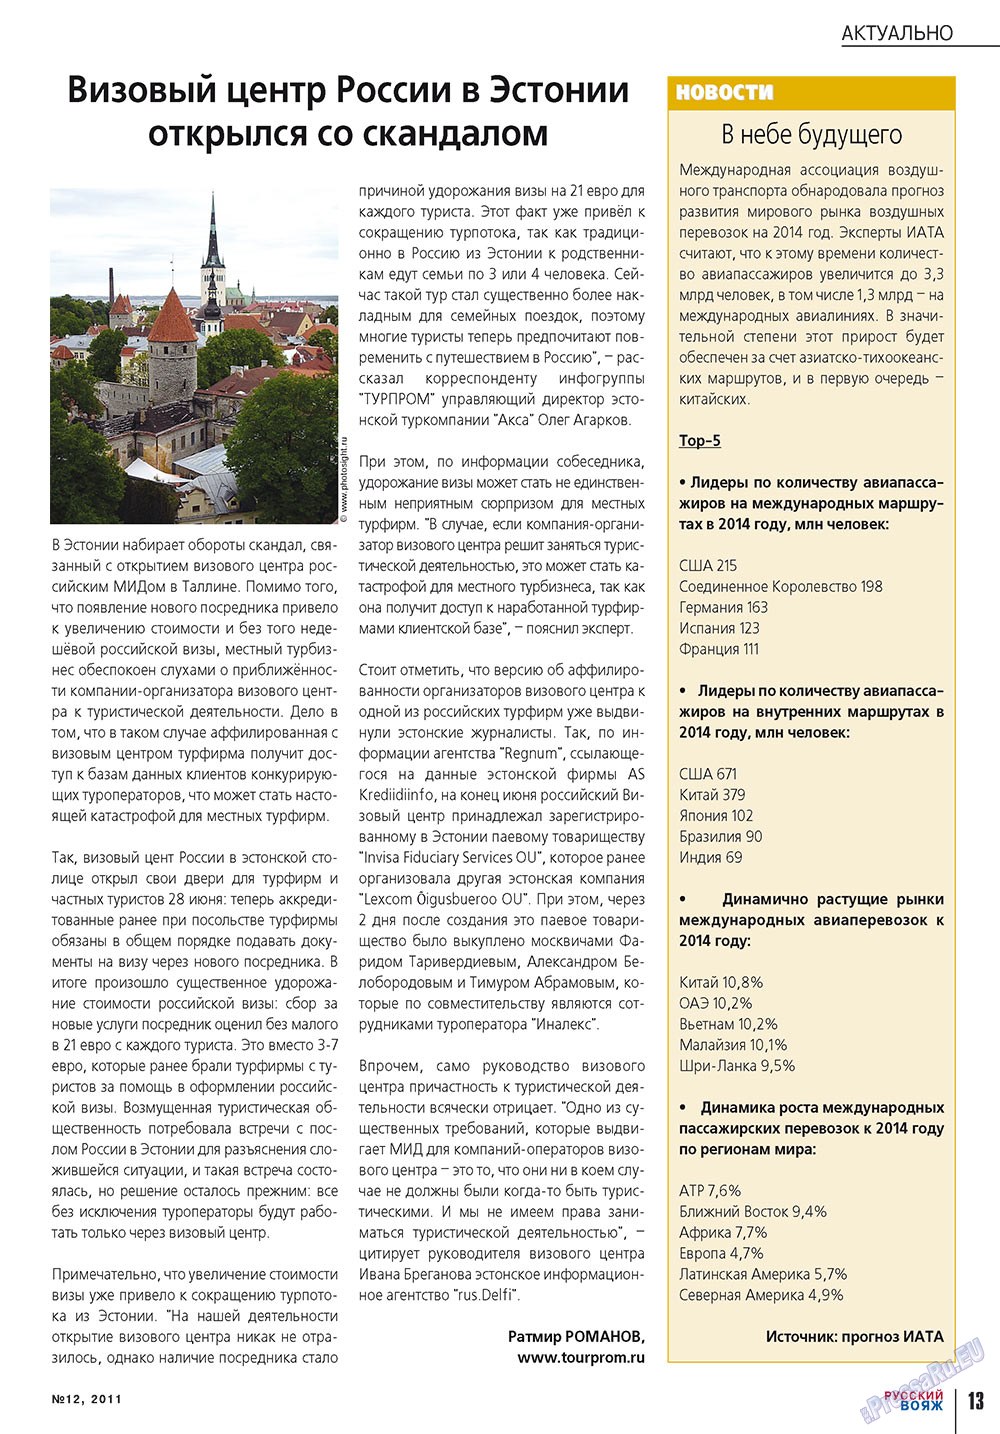 Русский вояж, журнал. 2011 №12 стр.13